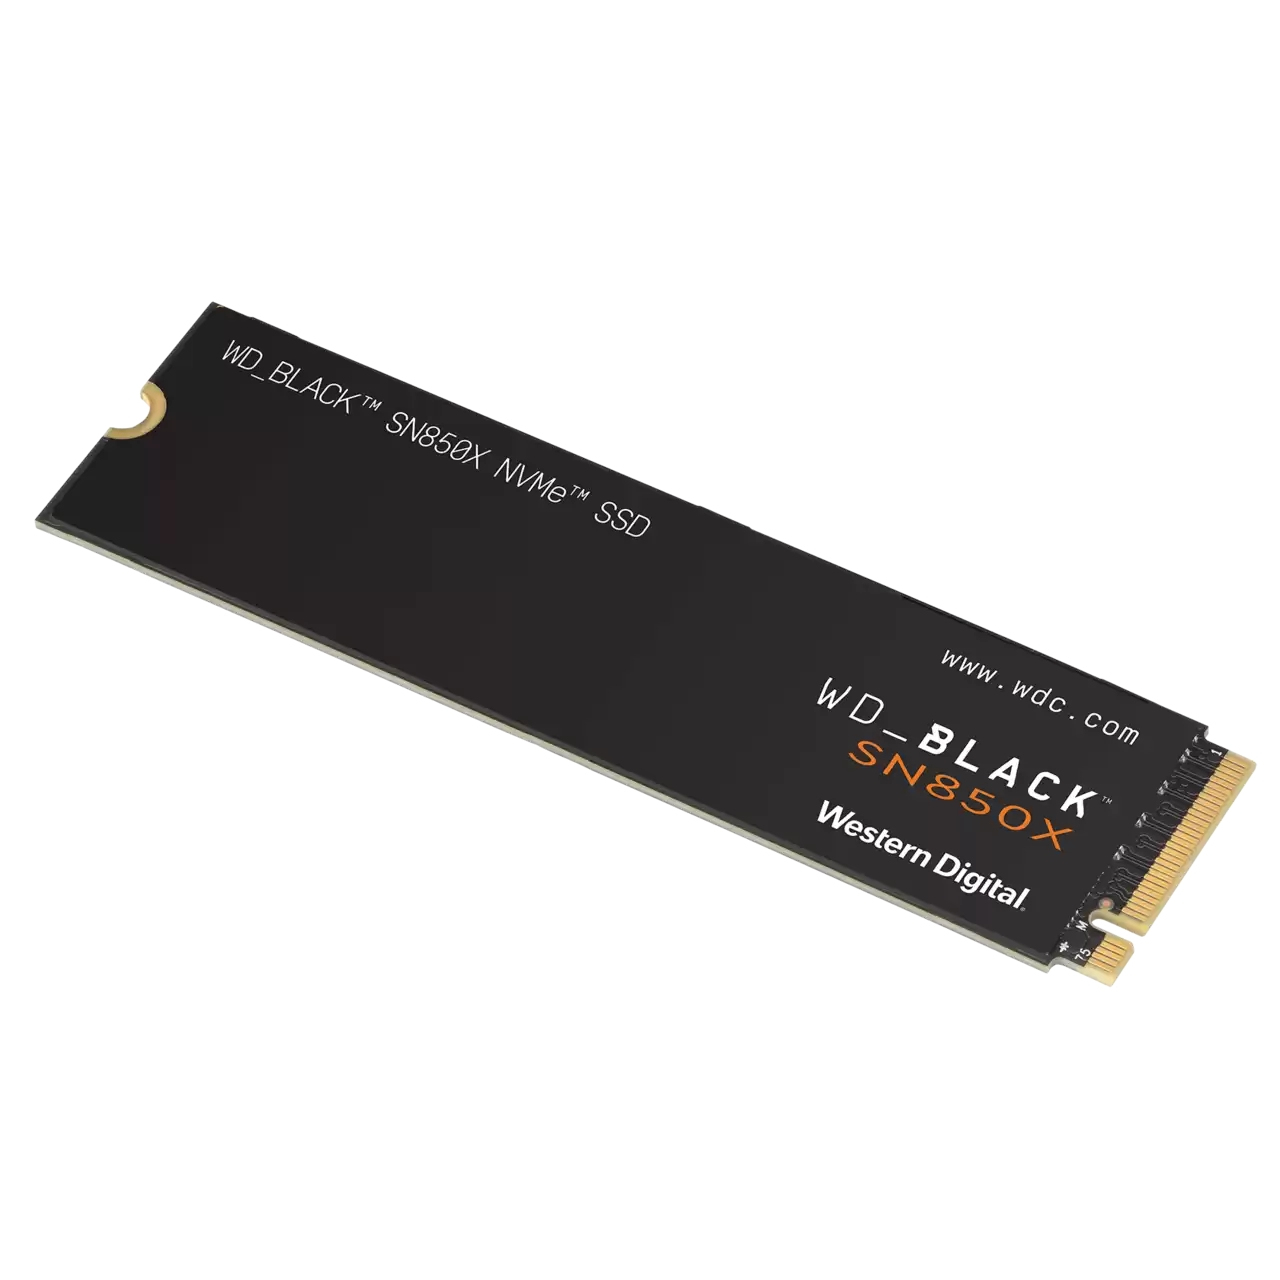 WD Black SN850X 4TB - PCIe 4.0 - M.2 NVMe SSD